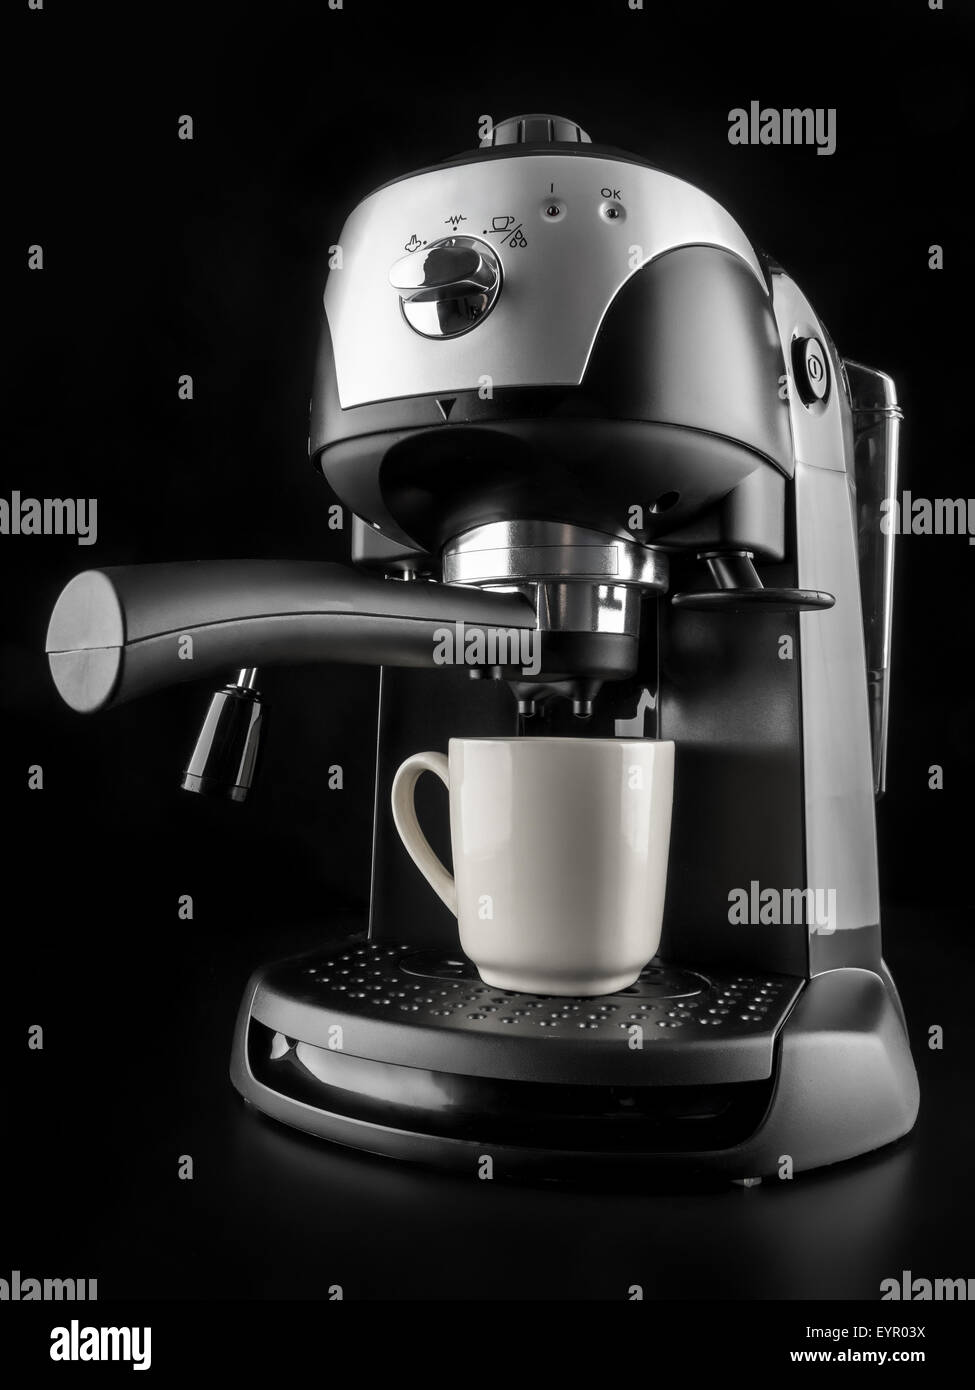 Với máy pha cà phê hiện đại này, bạn sẽ có thể thưởng thức những tách cà phê đậm đà, thơm ngon trong một nốt nhạc. Các tính năng thông minh và thiết kế tinh tế sẽ giúp bạn trở thành một chuyên gia pha cà phê trong nhà của mình. Hãy xem hình ảnh để khám phá chi tiết về máy pha cà phê này.